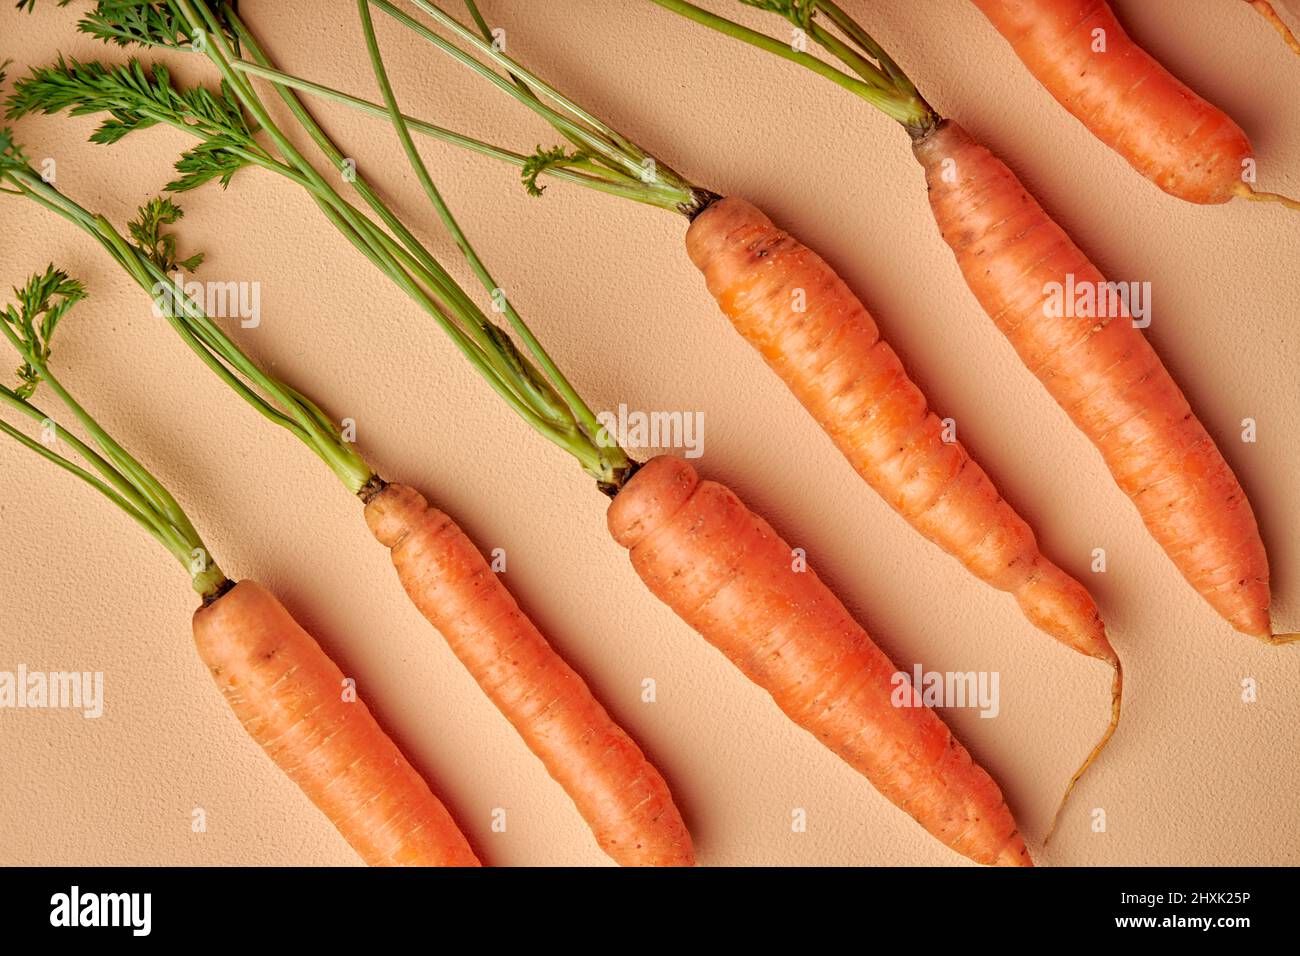 Zanahorias frescas con hojas verdes aisladas sobre fondo de color naranja pastel. Vegetal. Concepto de alimentación, nutrición. Plano, espacio de copia. Foto de stock